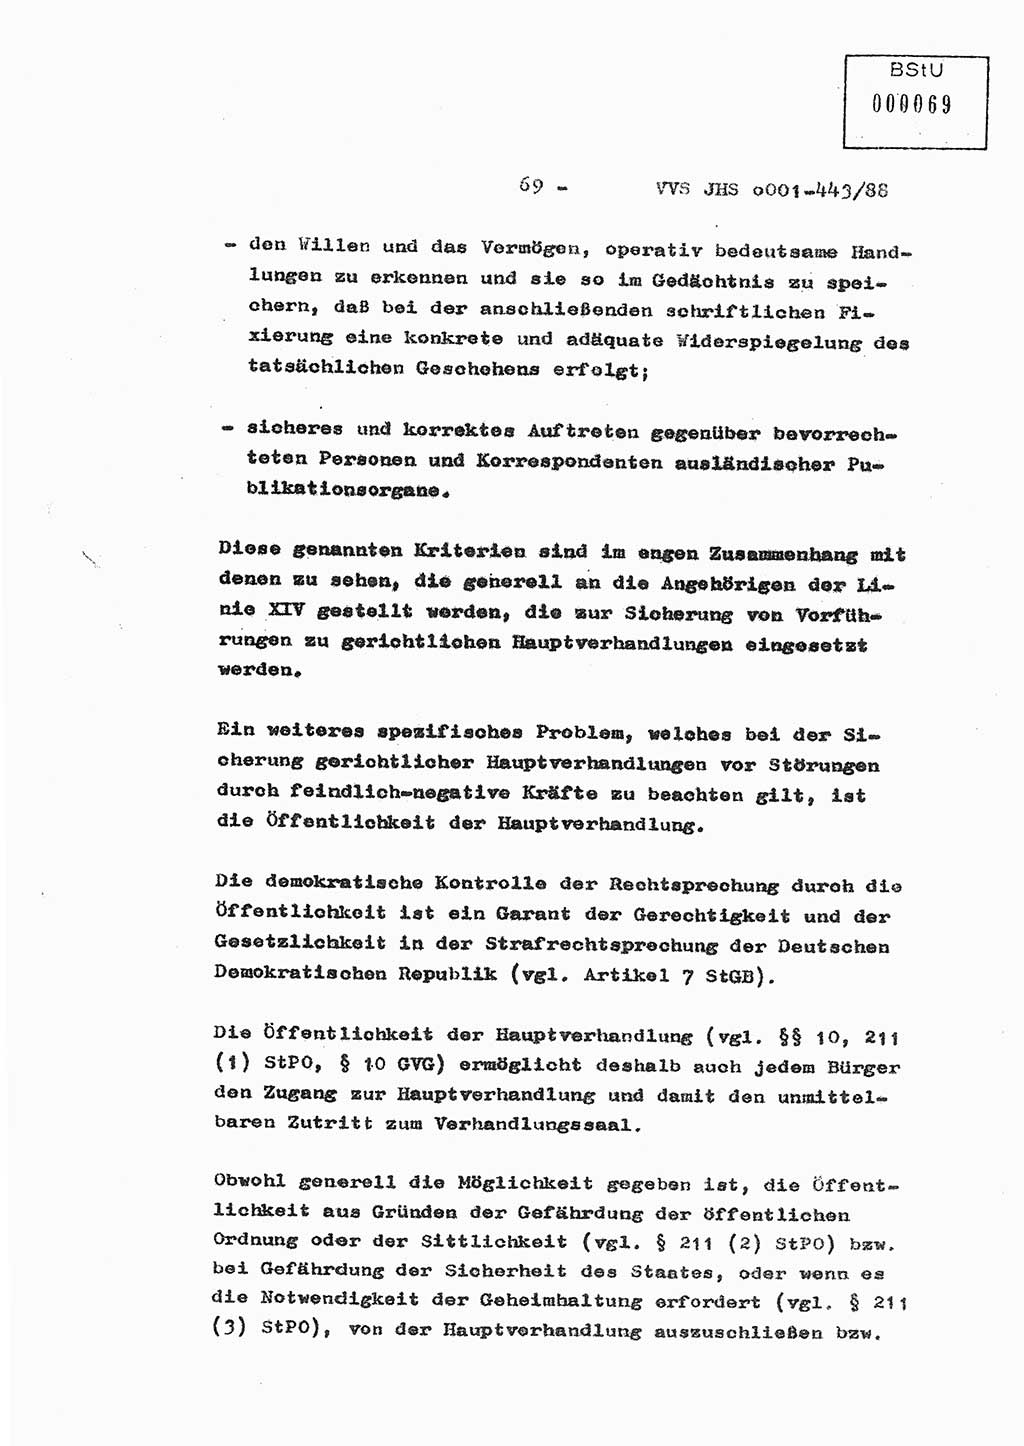 Diplomarbeit Hauptmann Michael Rast (Abt. ⅩⅣ), Major Bernd Rahaus (Abt. ⅩⅣ), Ministerium für Staatssicherheit (MfS) [Deutsche Demokratische Republik (DDR)], Juristische Hochschule (JHS), Vertrauliche Verschlußsache (VVS) o001-443/88, Potsdam 1988, Seite 69 (Dipl.-Arb. MfS DDR JHS VVS o001-443/88 1988, S. 69)